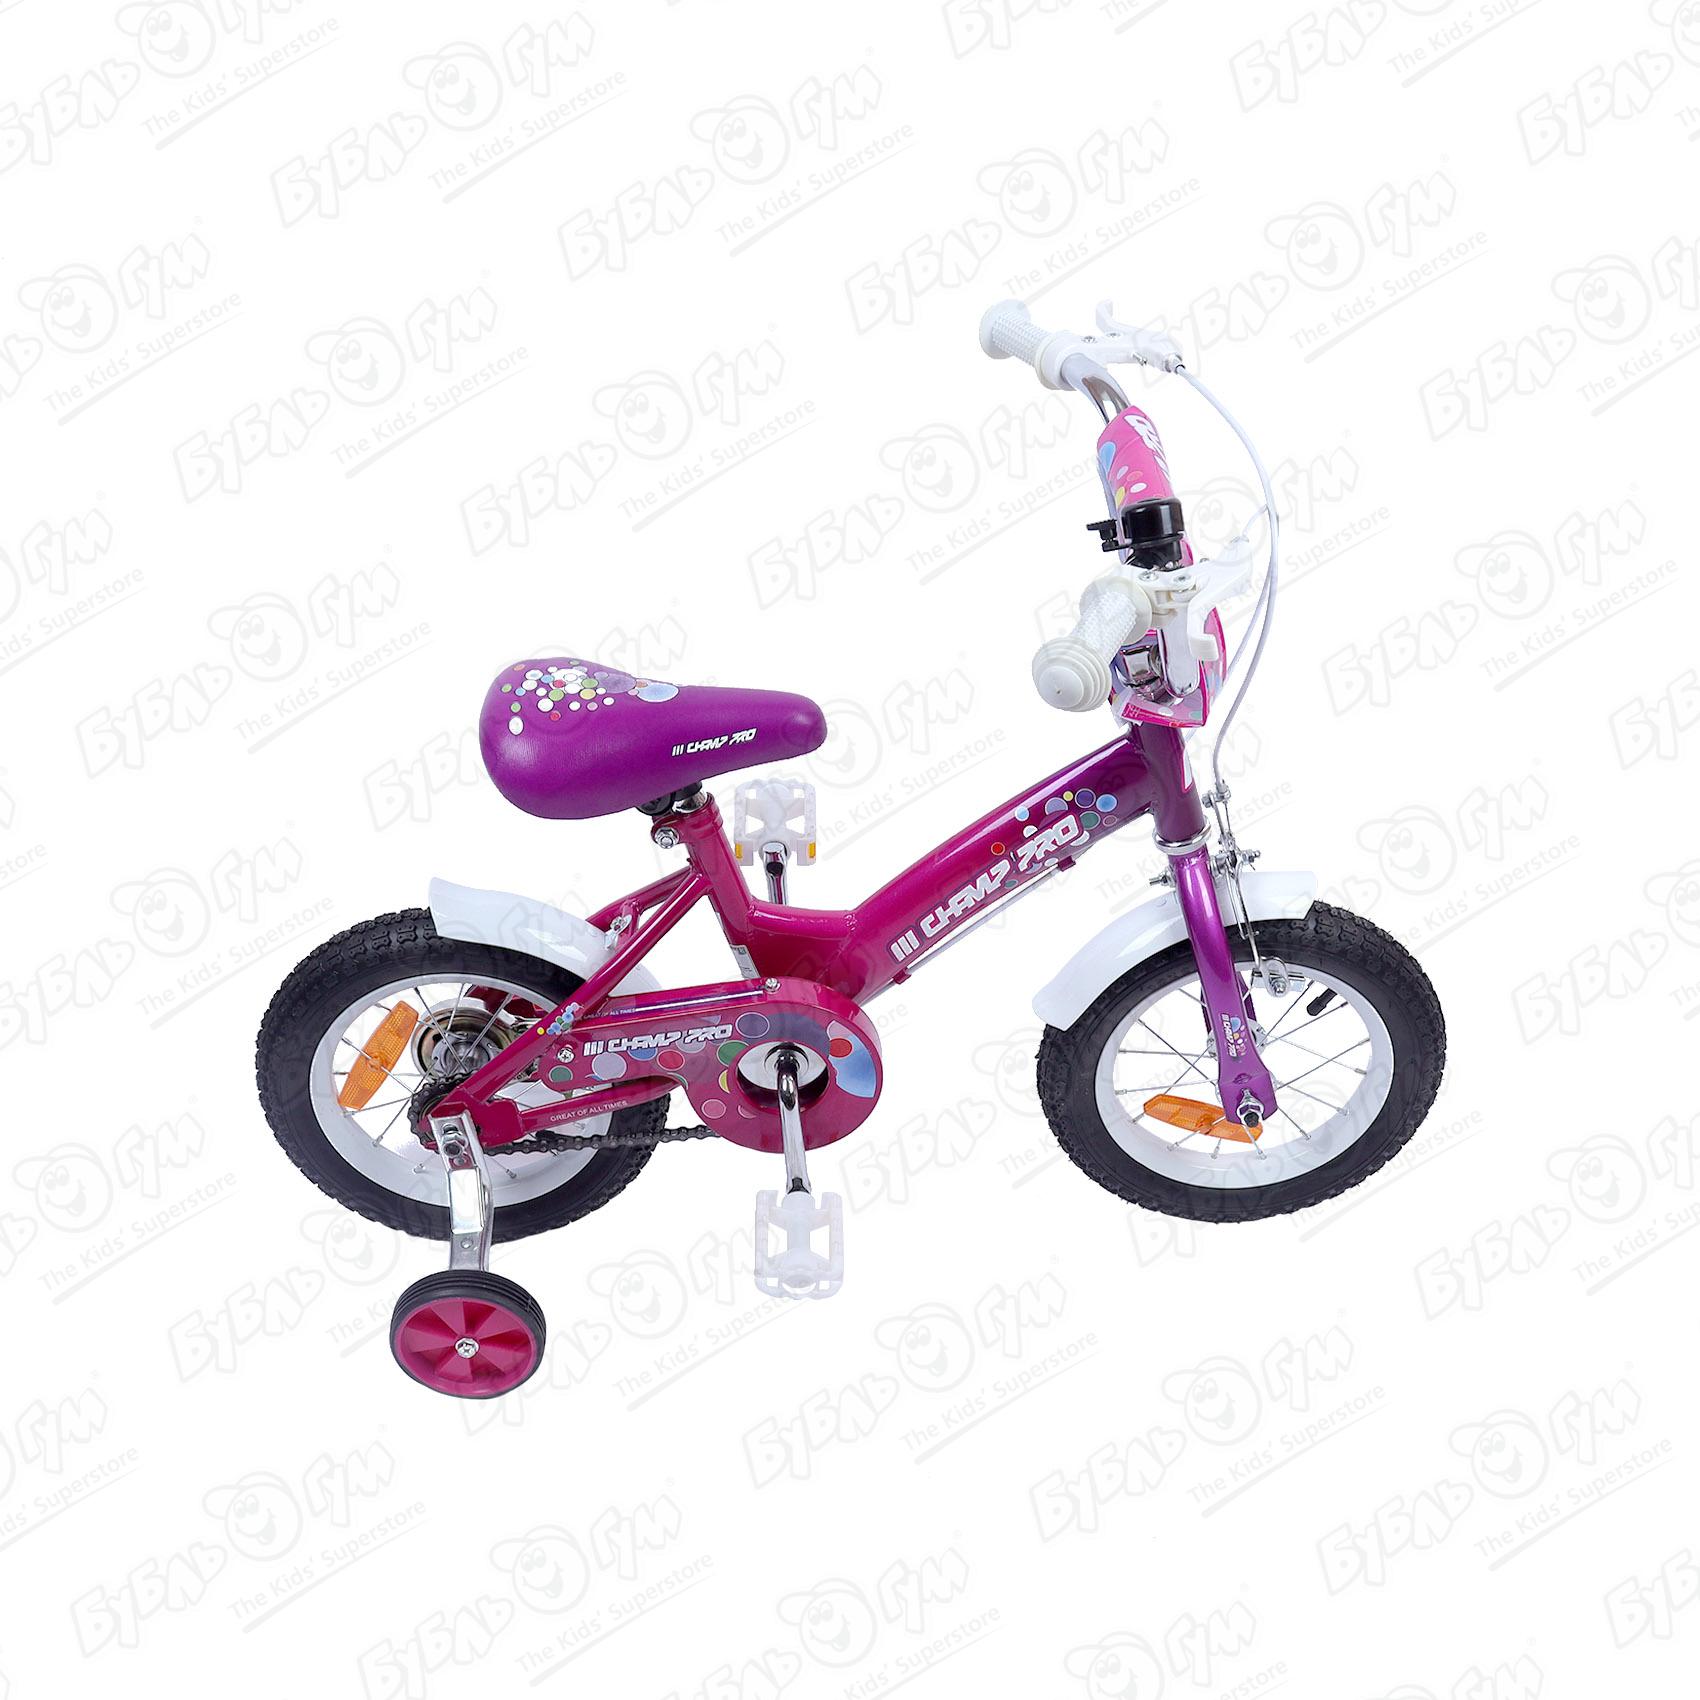 Велосипед Champ Pro G12 детский четырехколесный розовый - фото 5